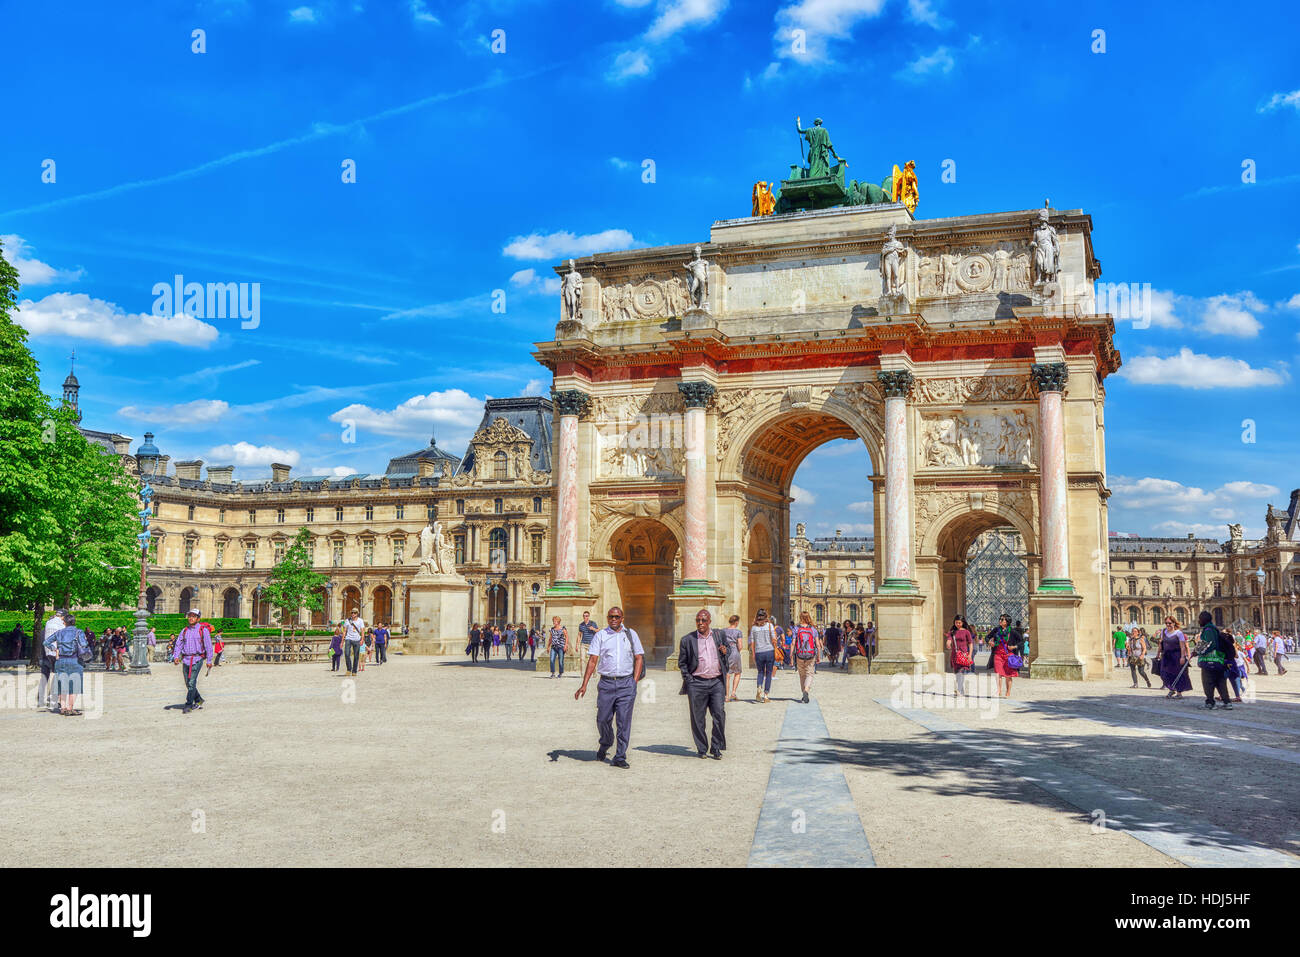 Parigi, Francia - Luglio 06, 2016 : Arc de triomphe du Carrousel (1806-1808) e la gente intorno, progettata da Charles Percier vicino al Louvre, Parigi, Francia Foto Stock